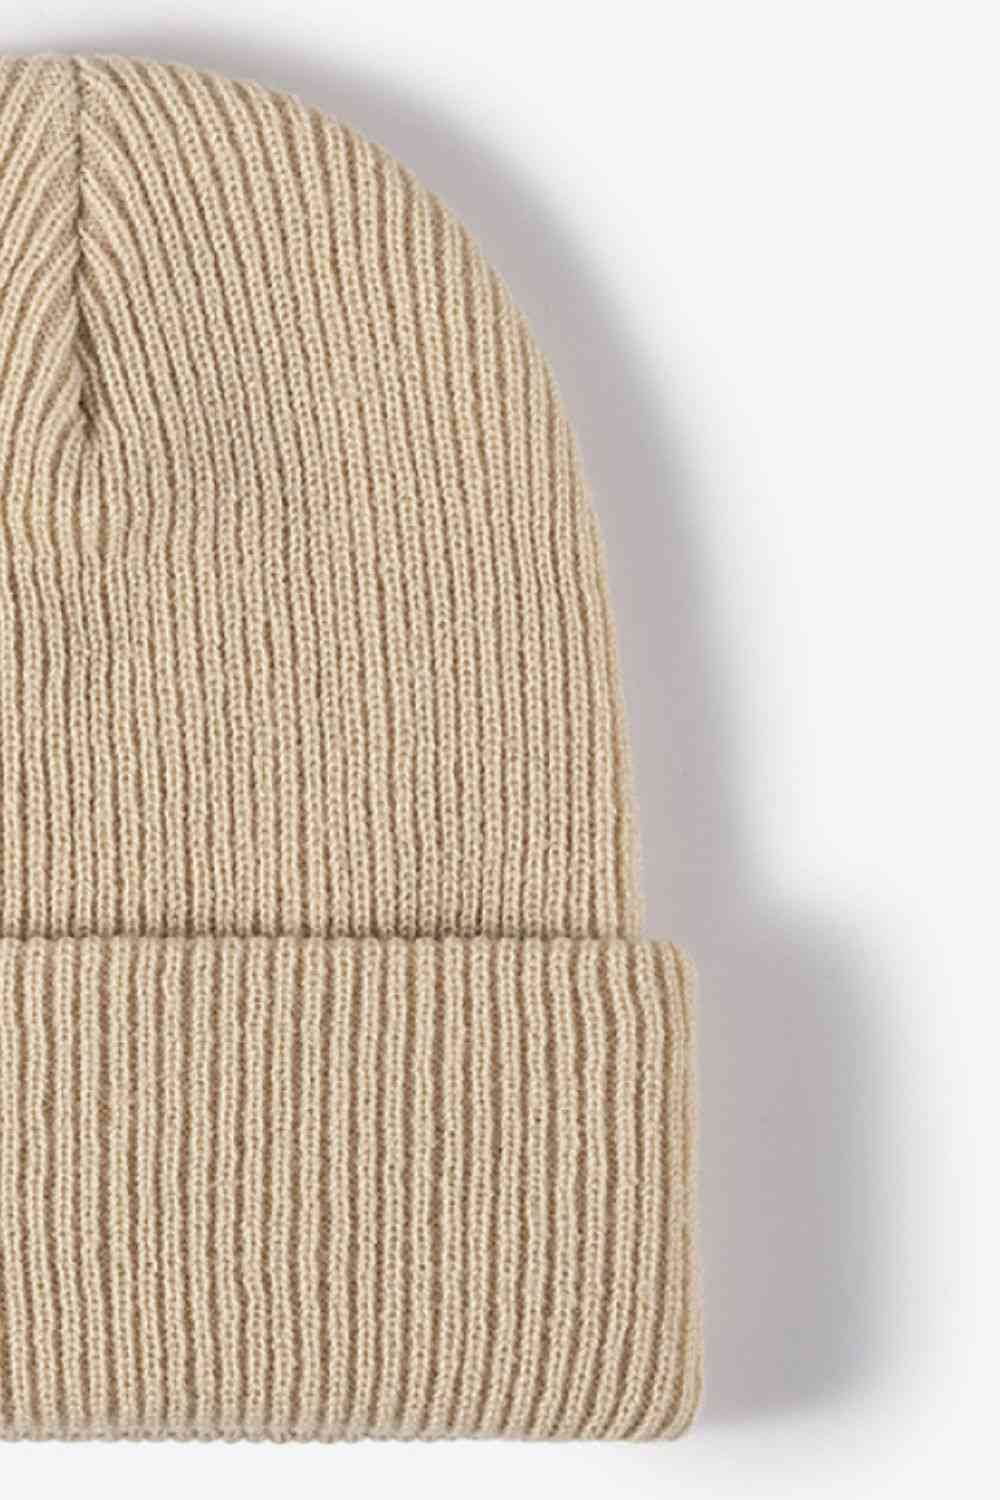 EZBeanie Warm Winter Hat Knit Beanie